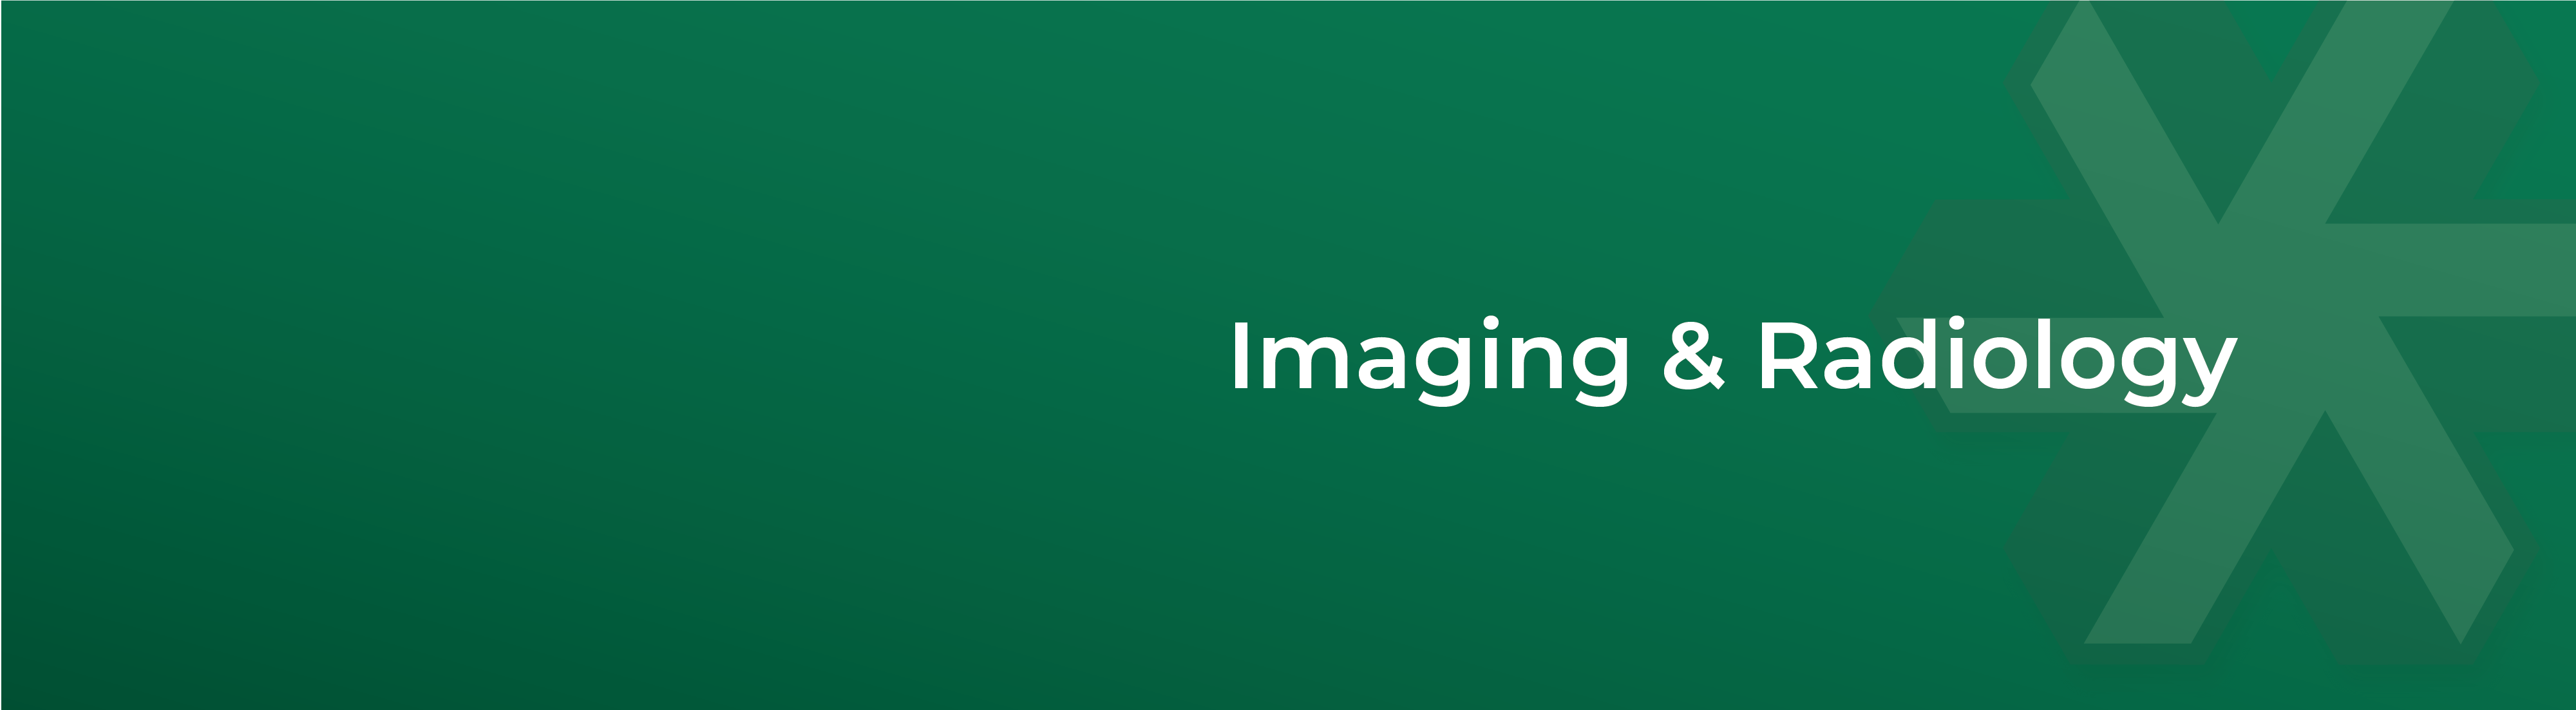 ImagingRadiology-Header-01